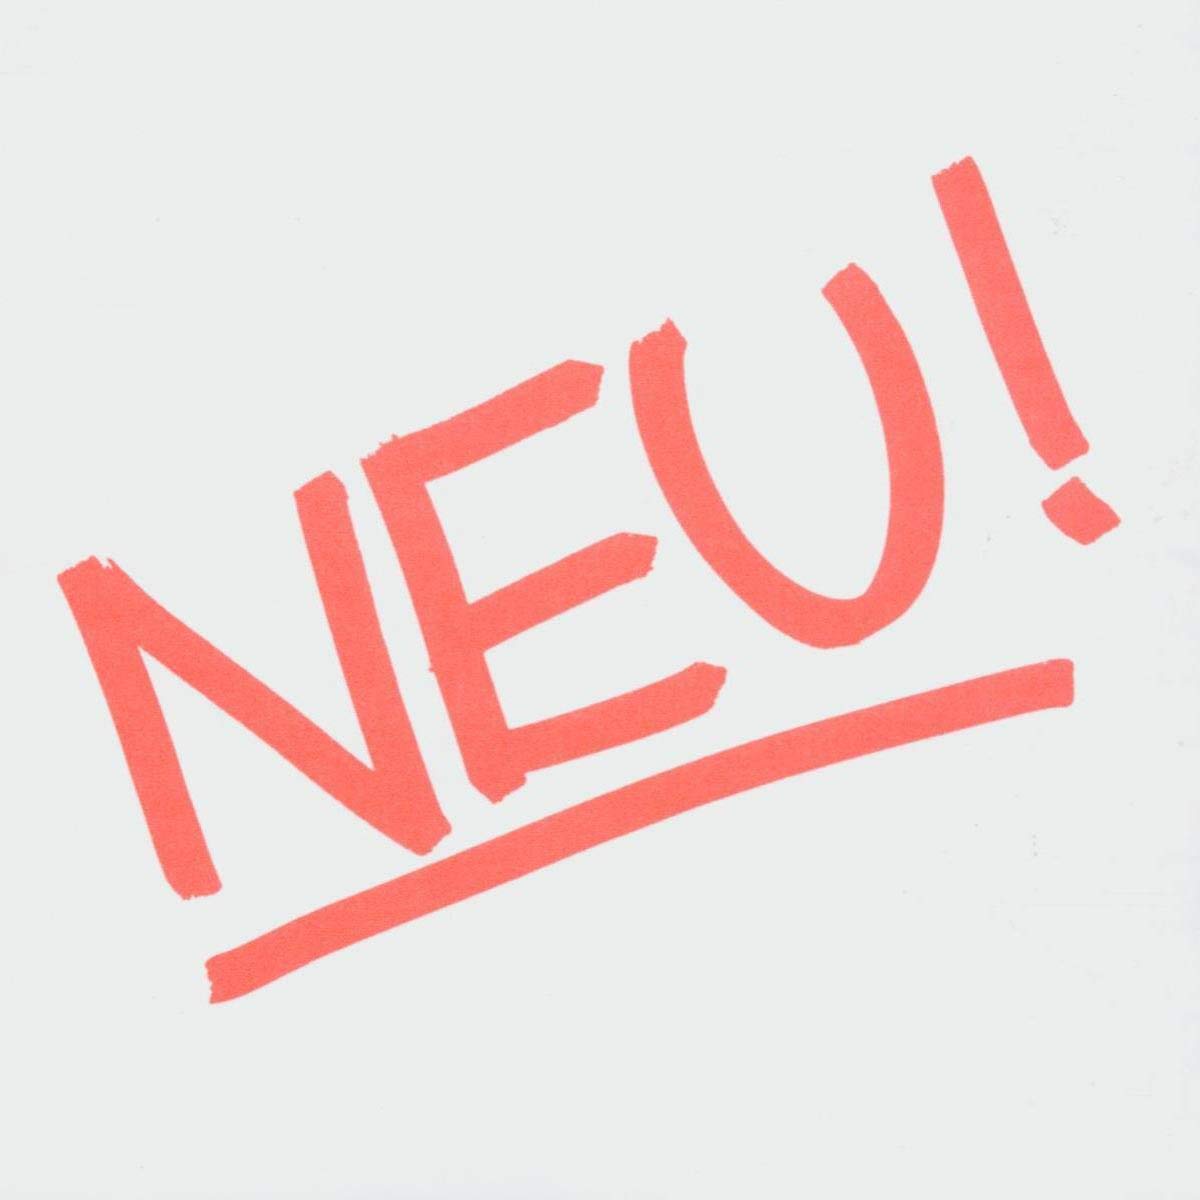 Neu! - Neu! (white Vinyl) - LP